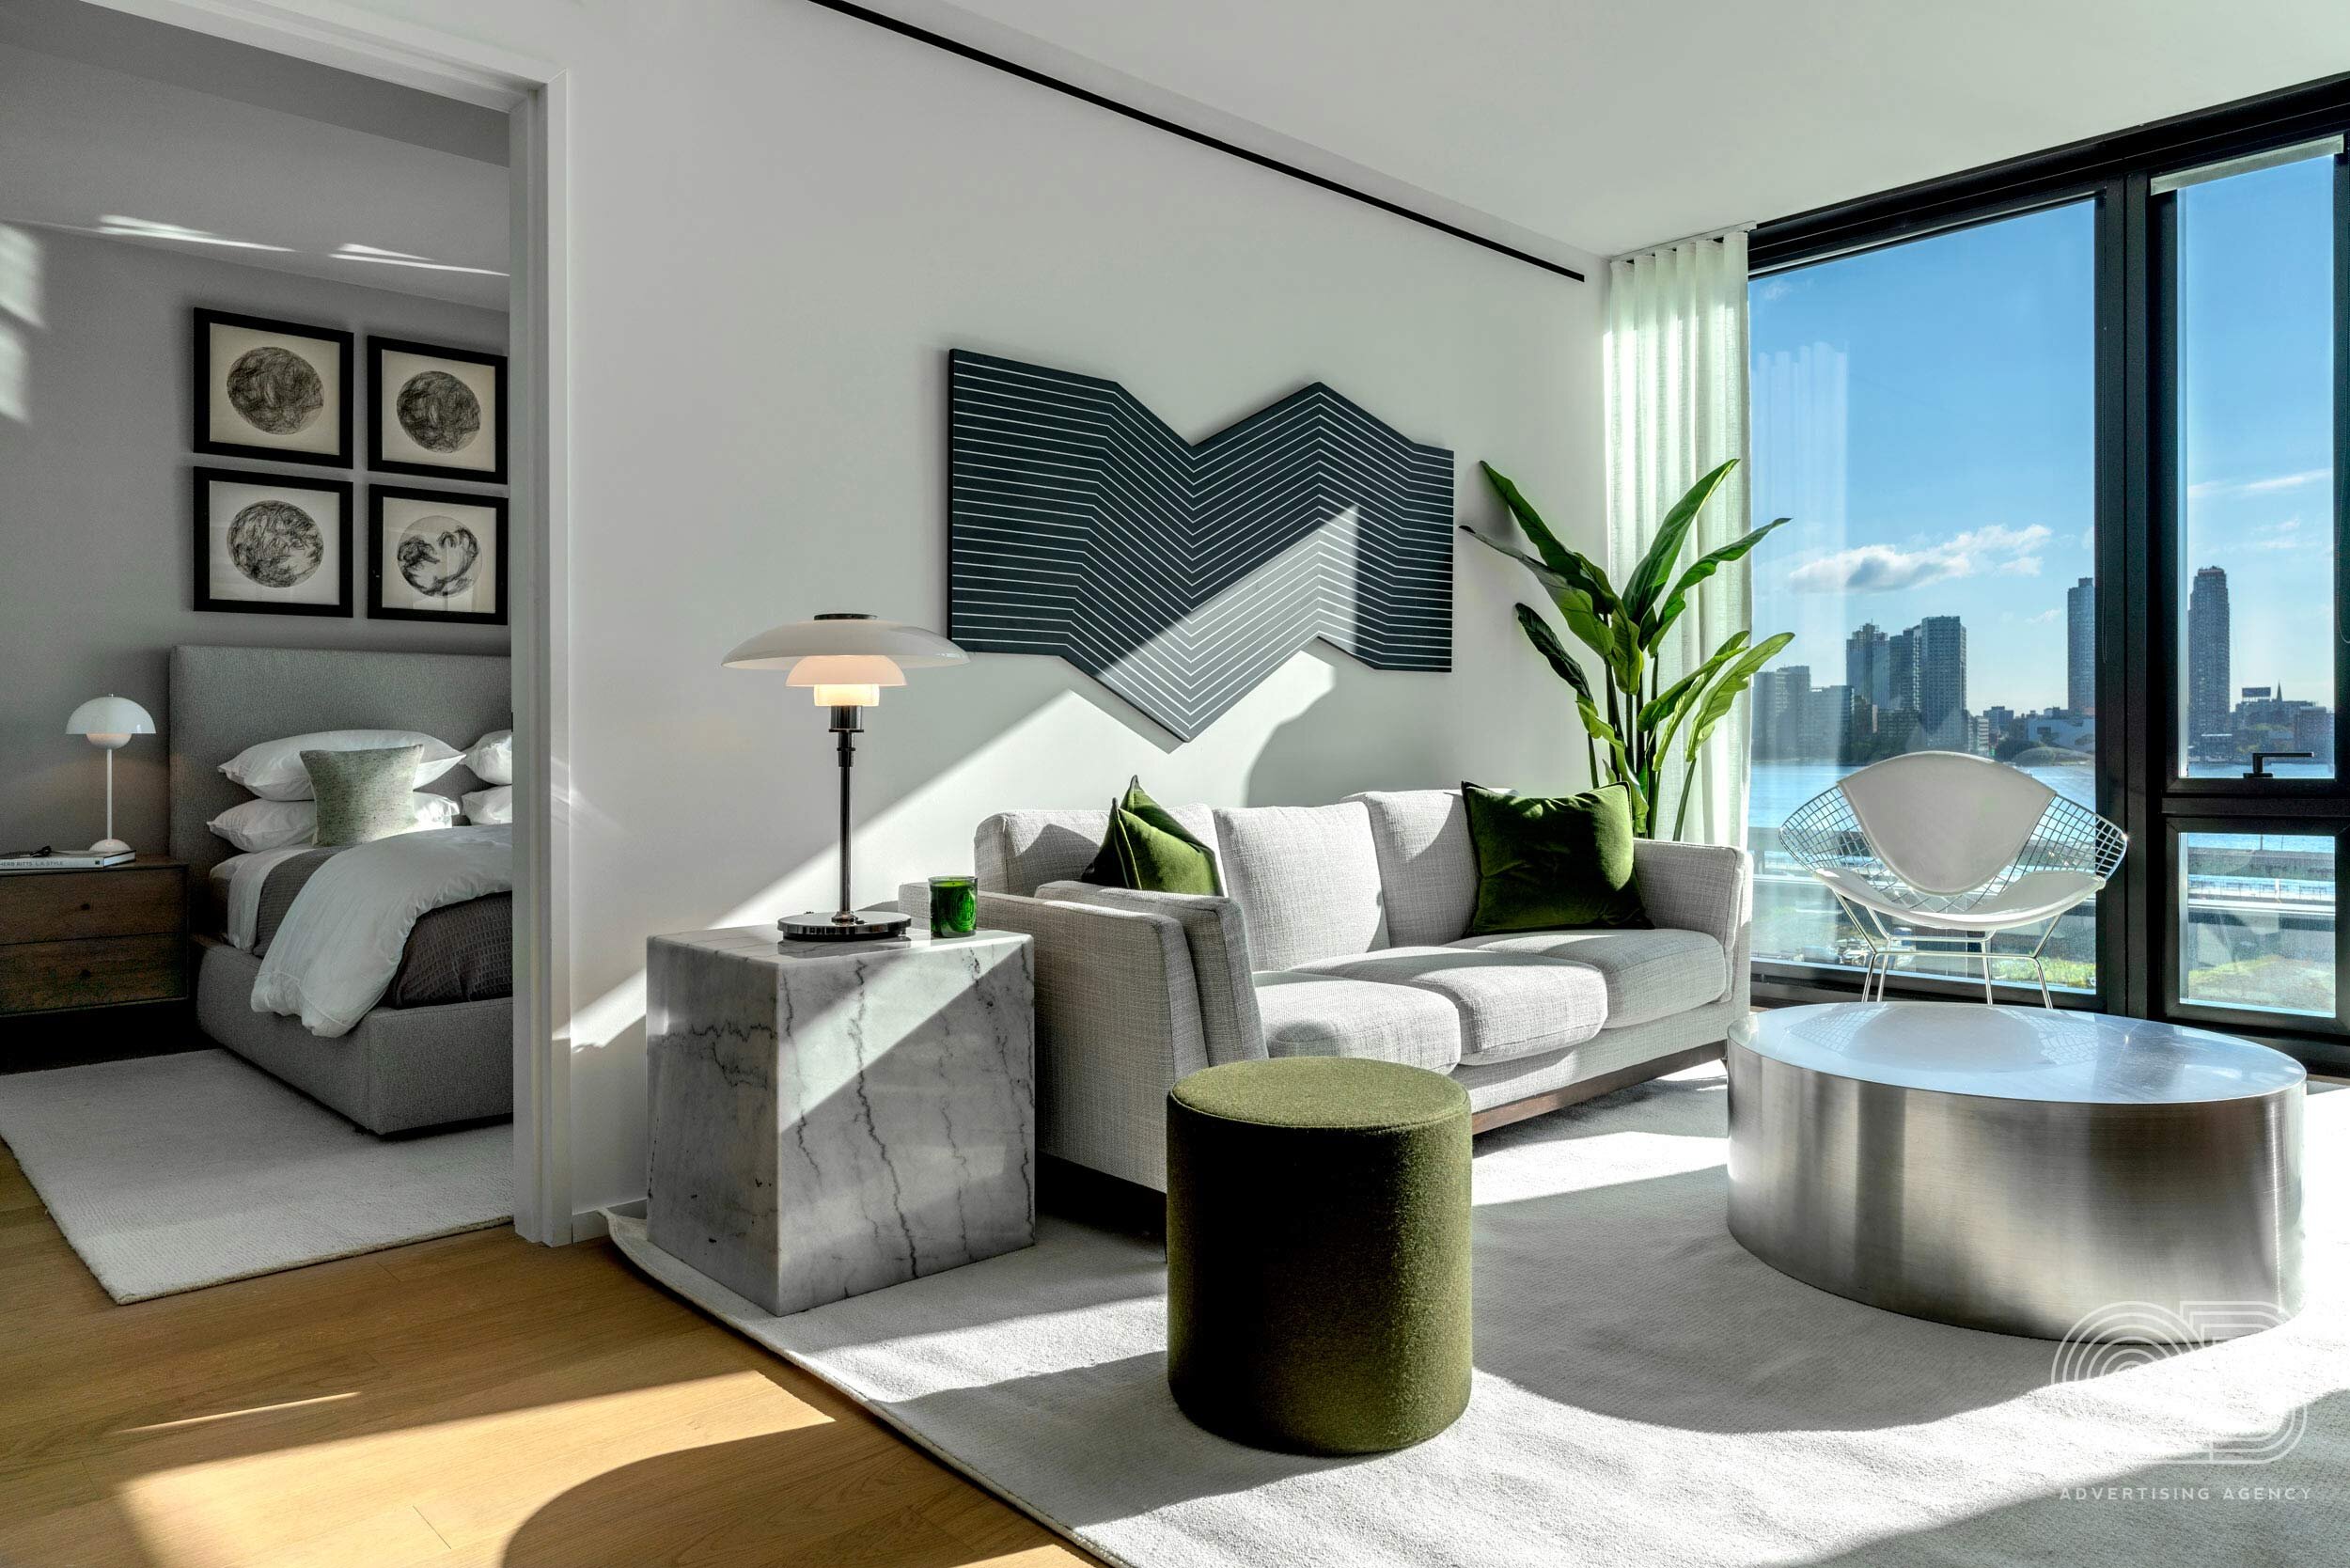 interior-living-room-sunlight.jpg